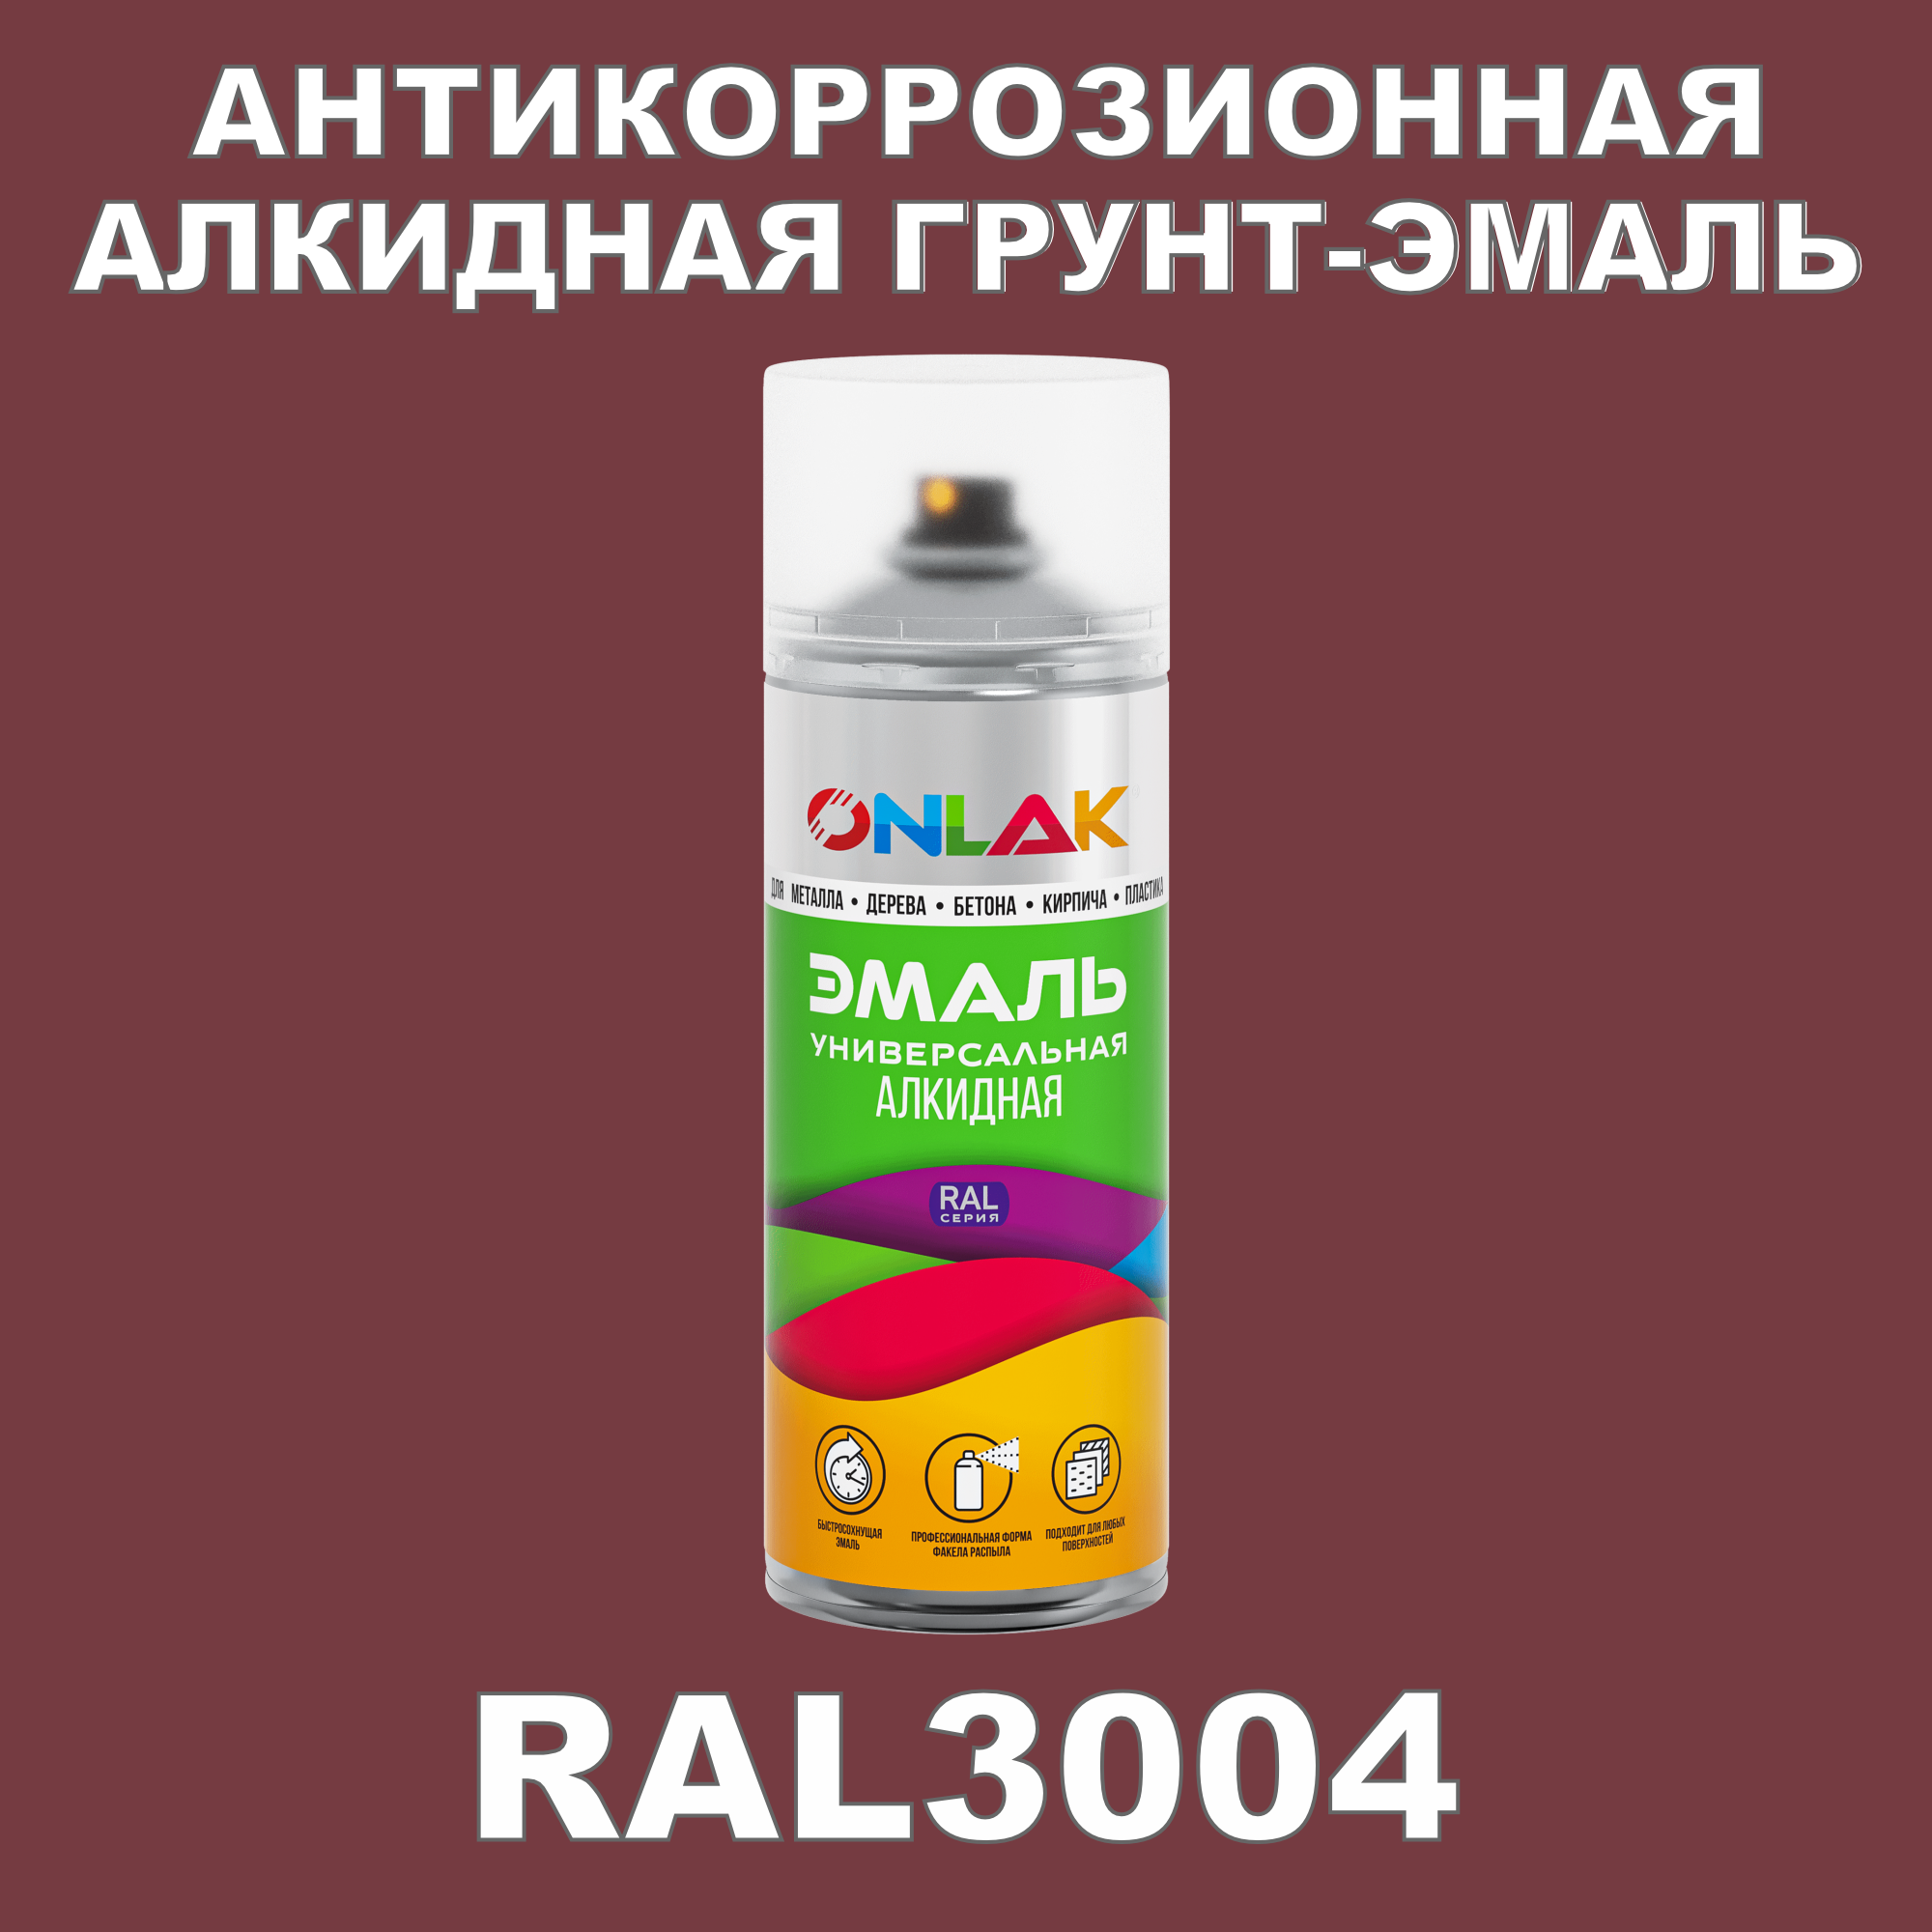 Антикоррозионная грунт-эмаль ONLAK RAL3004 полуматовая для металла и защиты от ржавчины